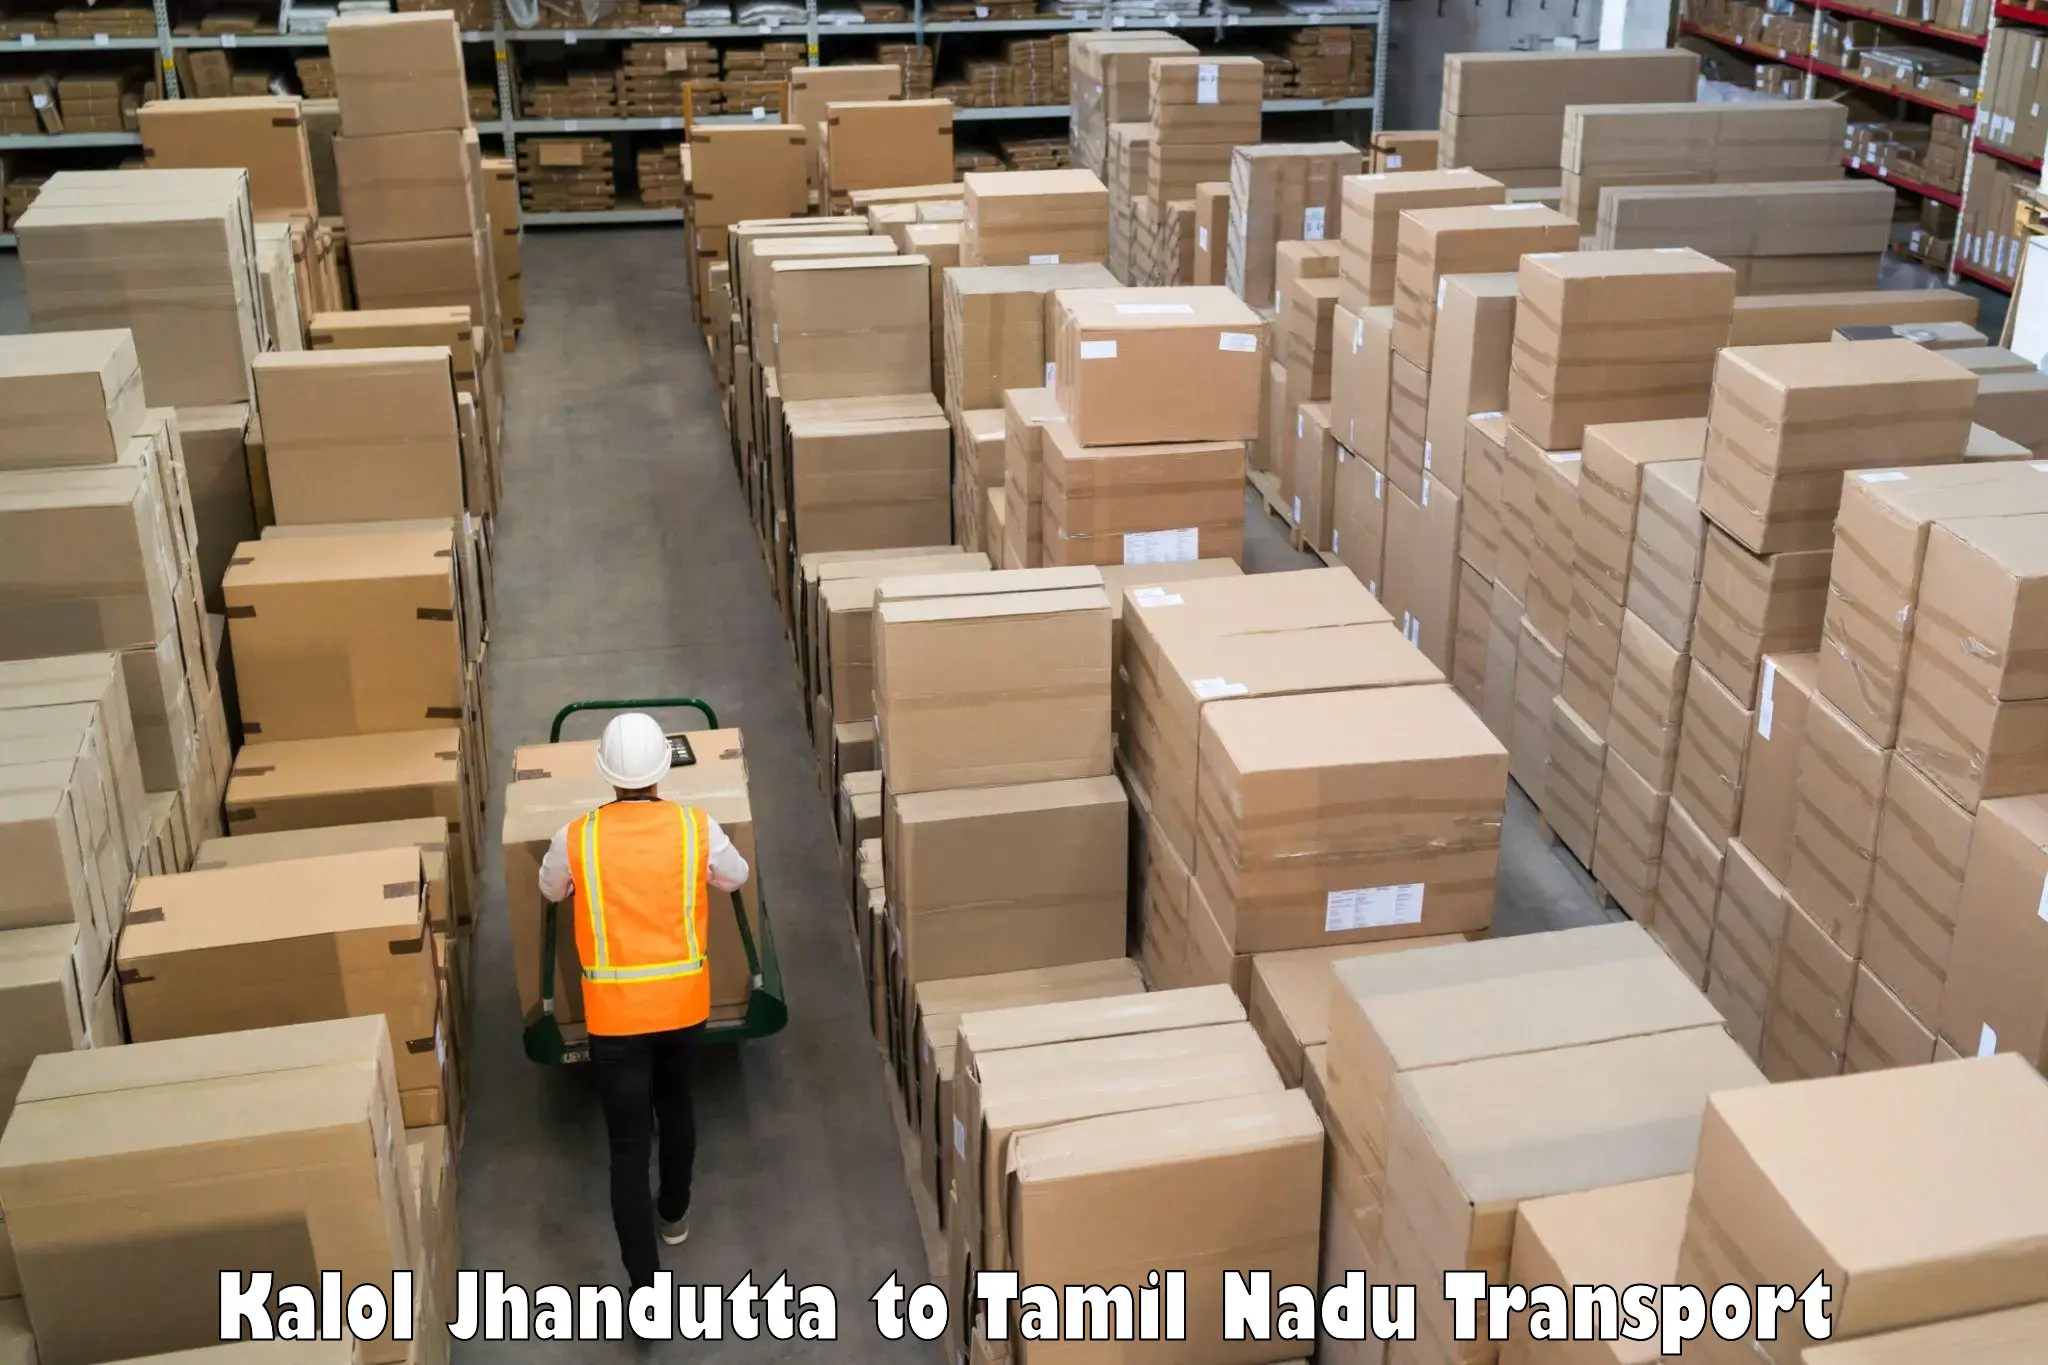 Furniture transport service Kalol Jhandutta to Tirupattur